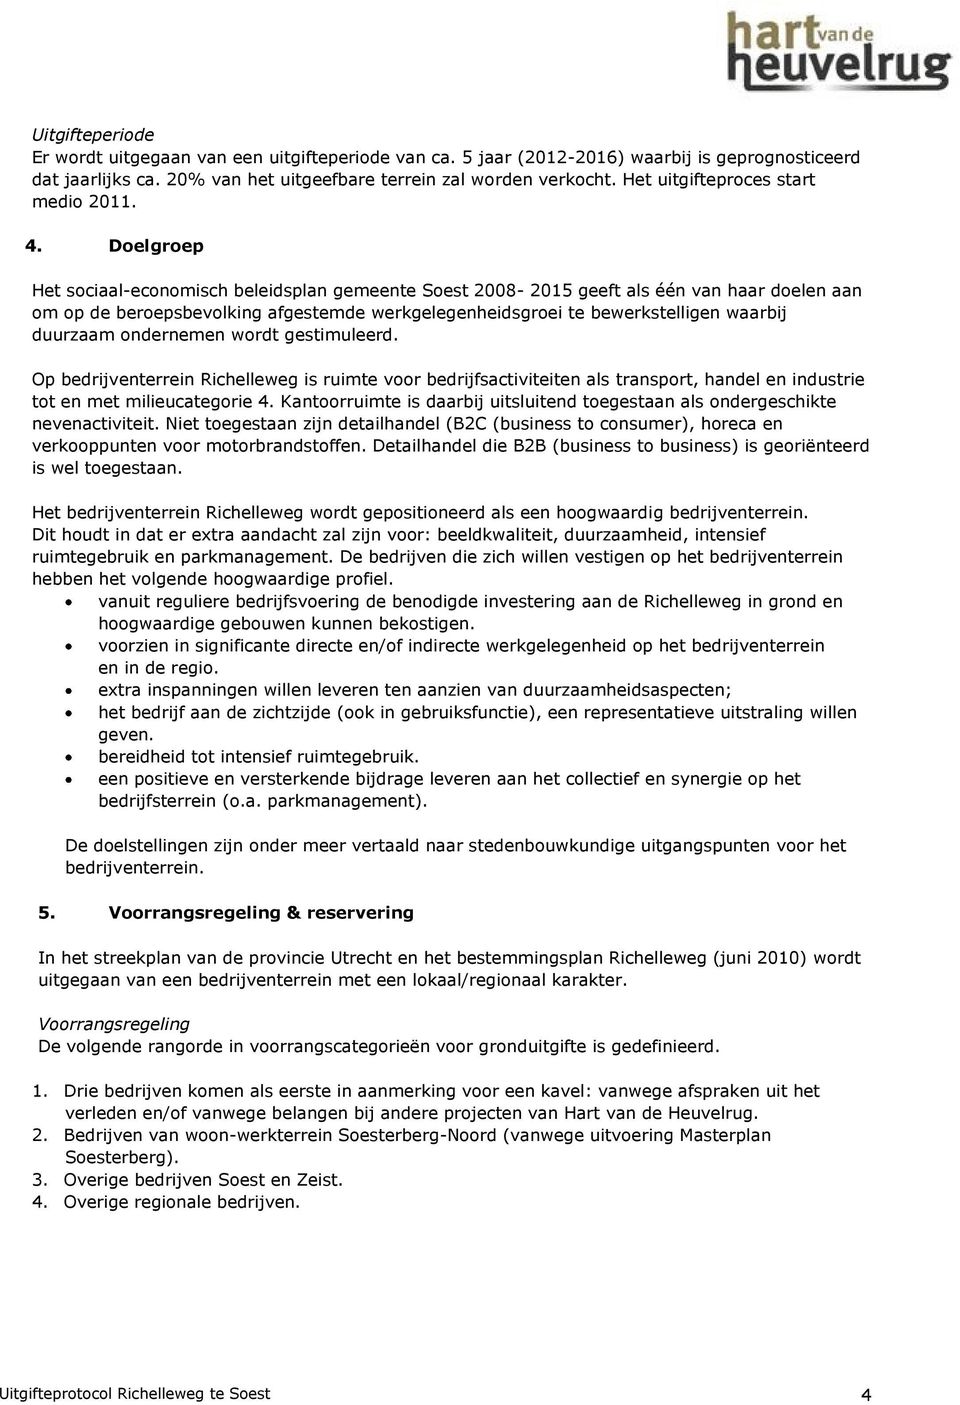 Doelgroep Het sociaal-economisch beleidsplan gemeente Soest 2008-2015 geeft als één van haar doelen aan om op de beroepsbevolking afgestemde werkgelegenheidsgroei te bewerkstelligen waarbij duurzaam